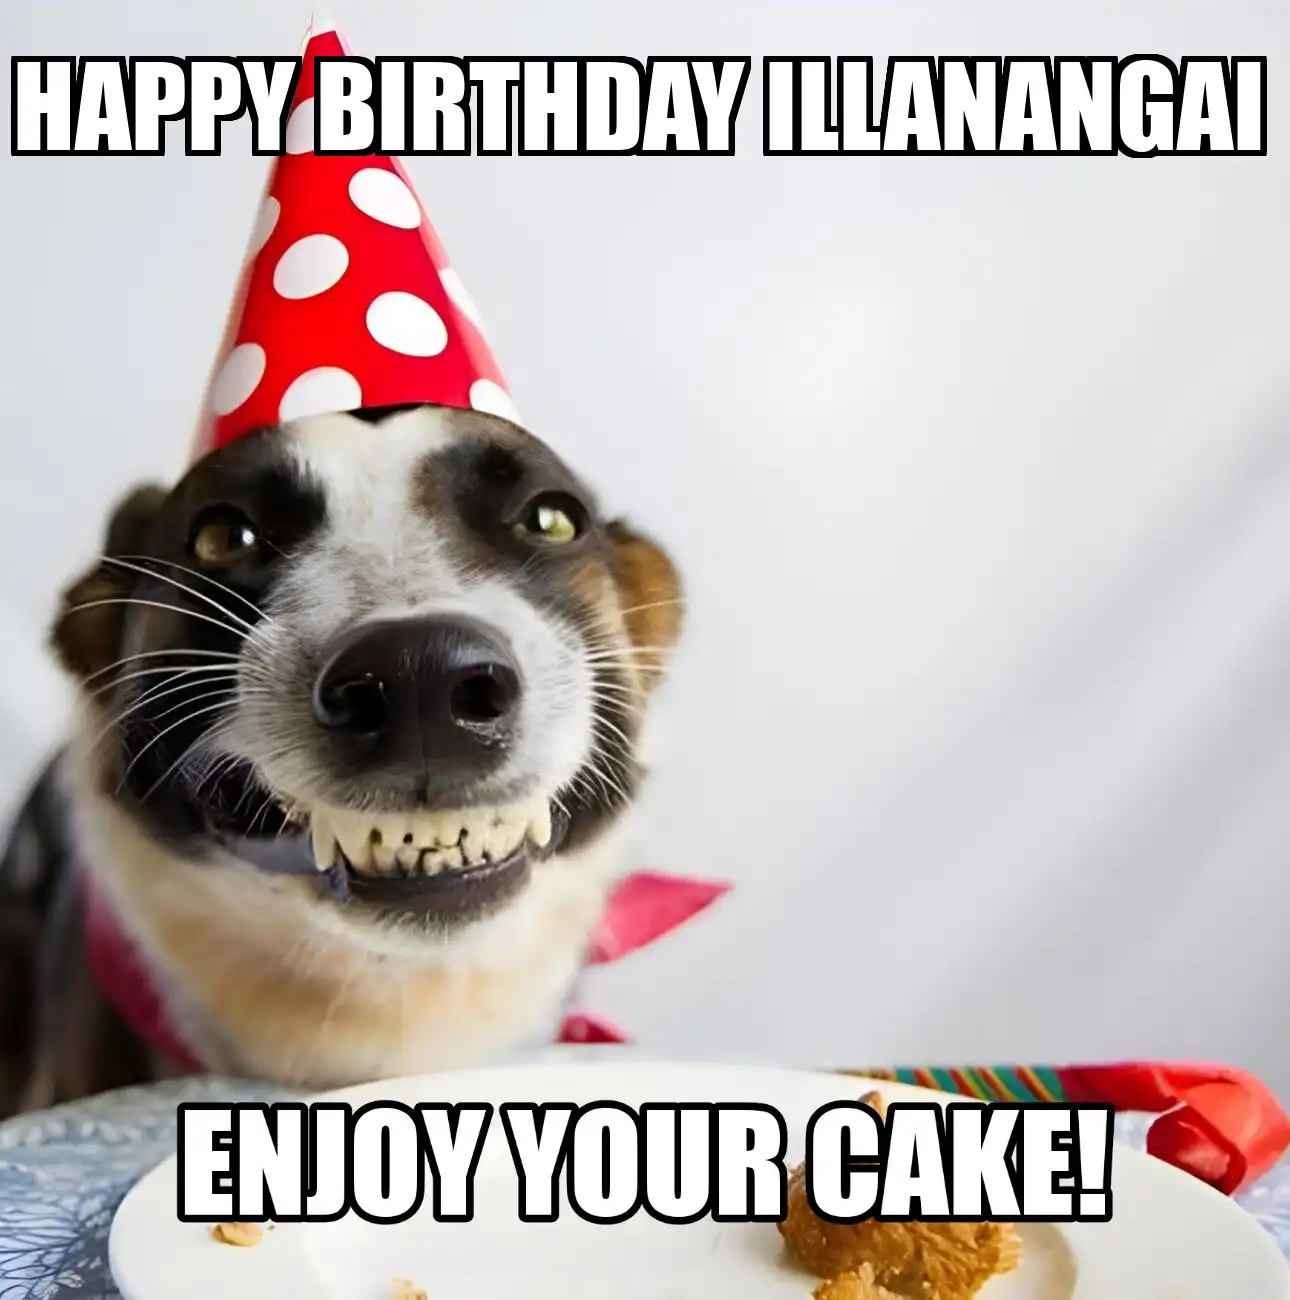 Happy Birthday Illanangai Enjoy Your Cake Dog Meme